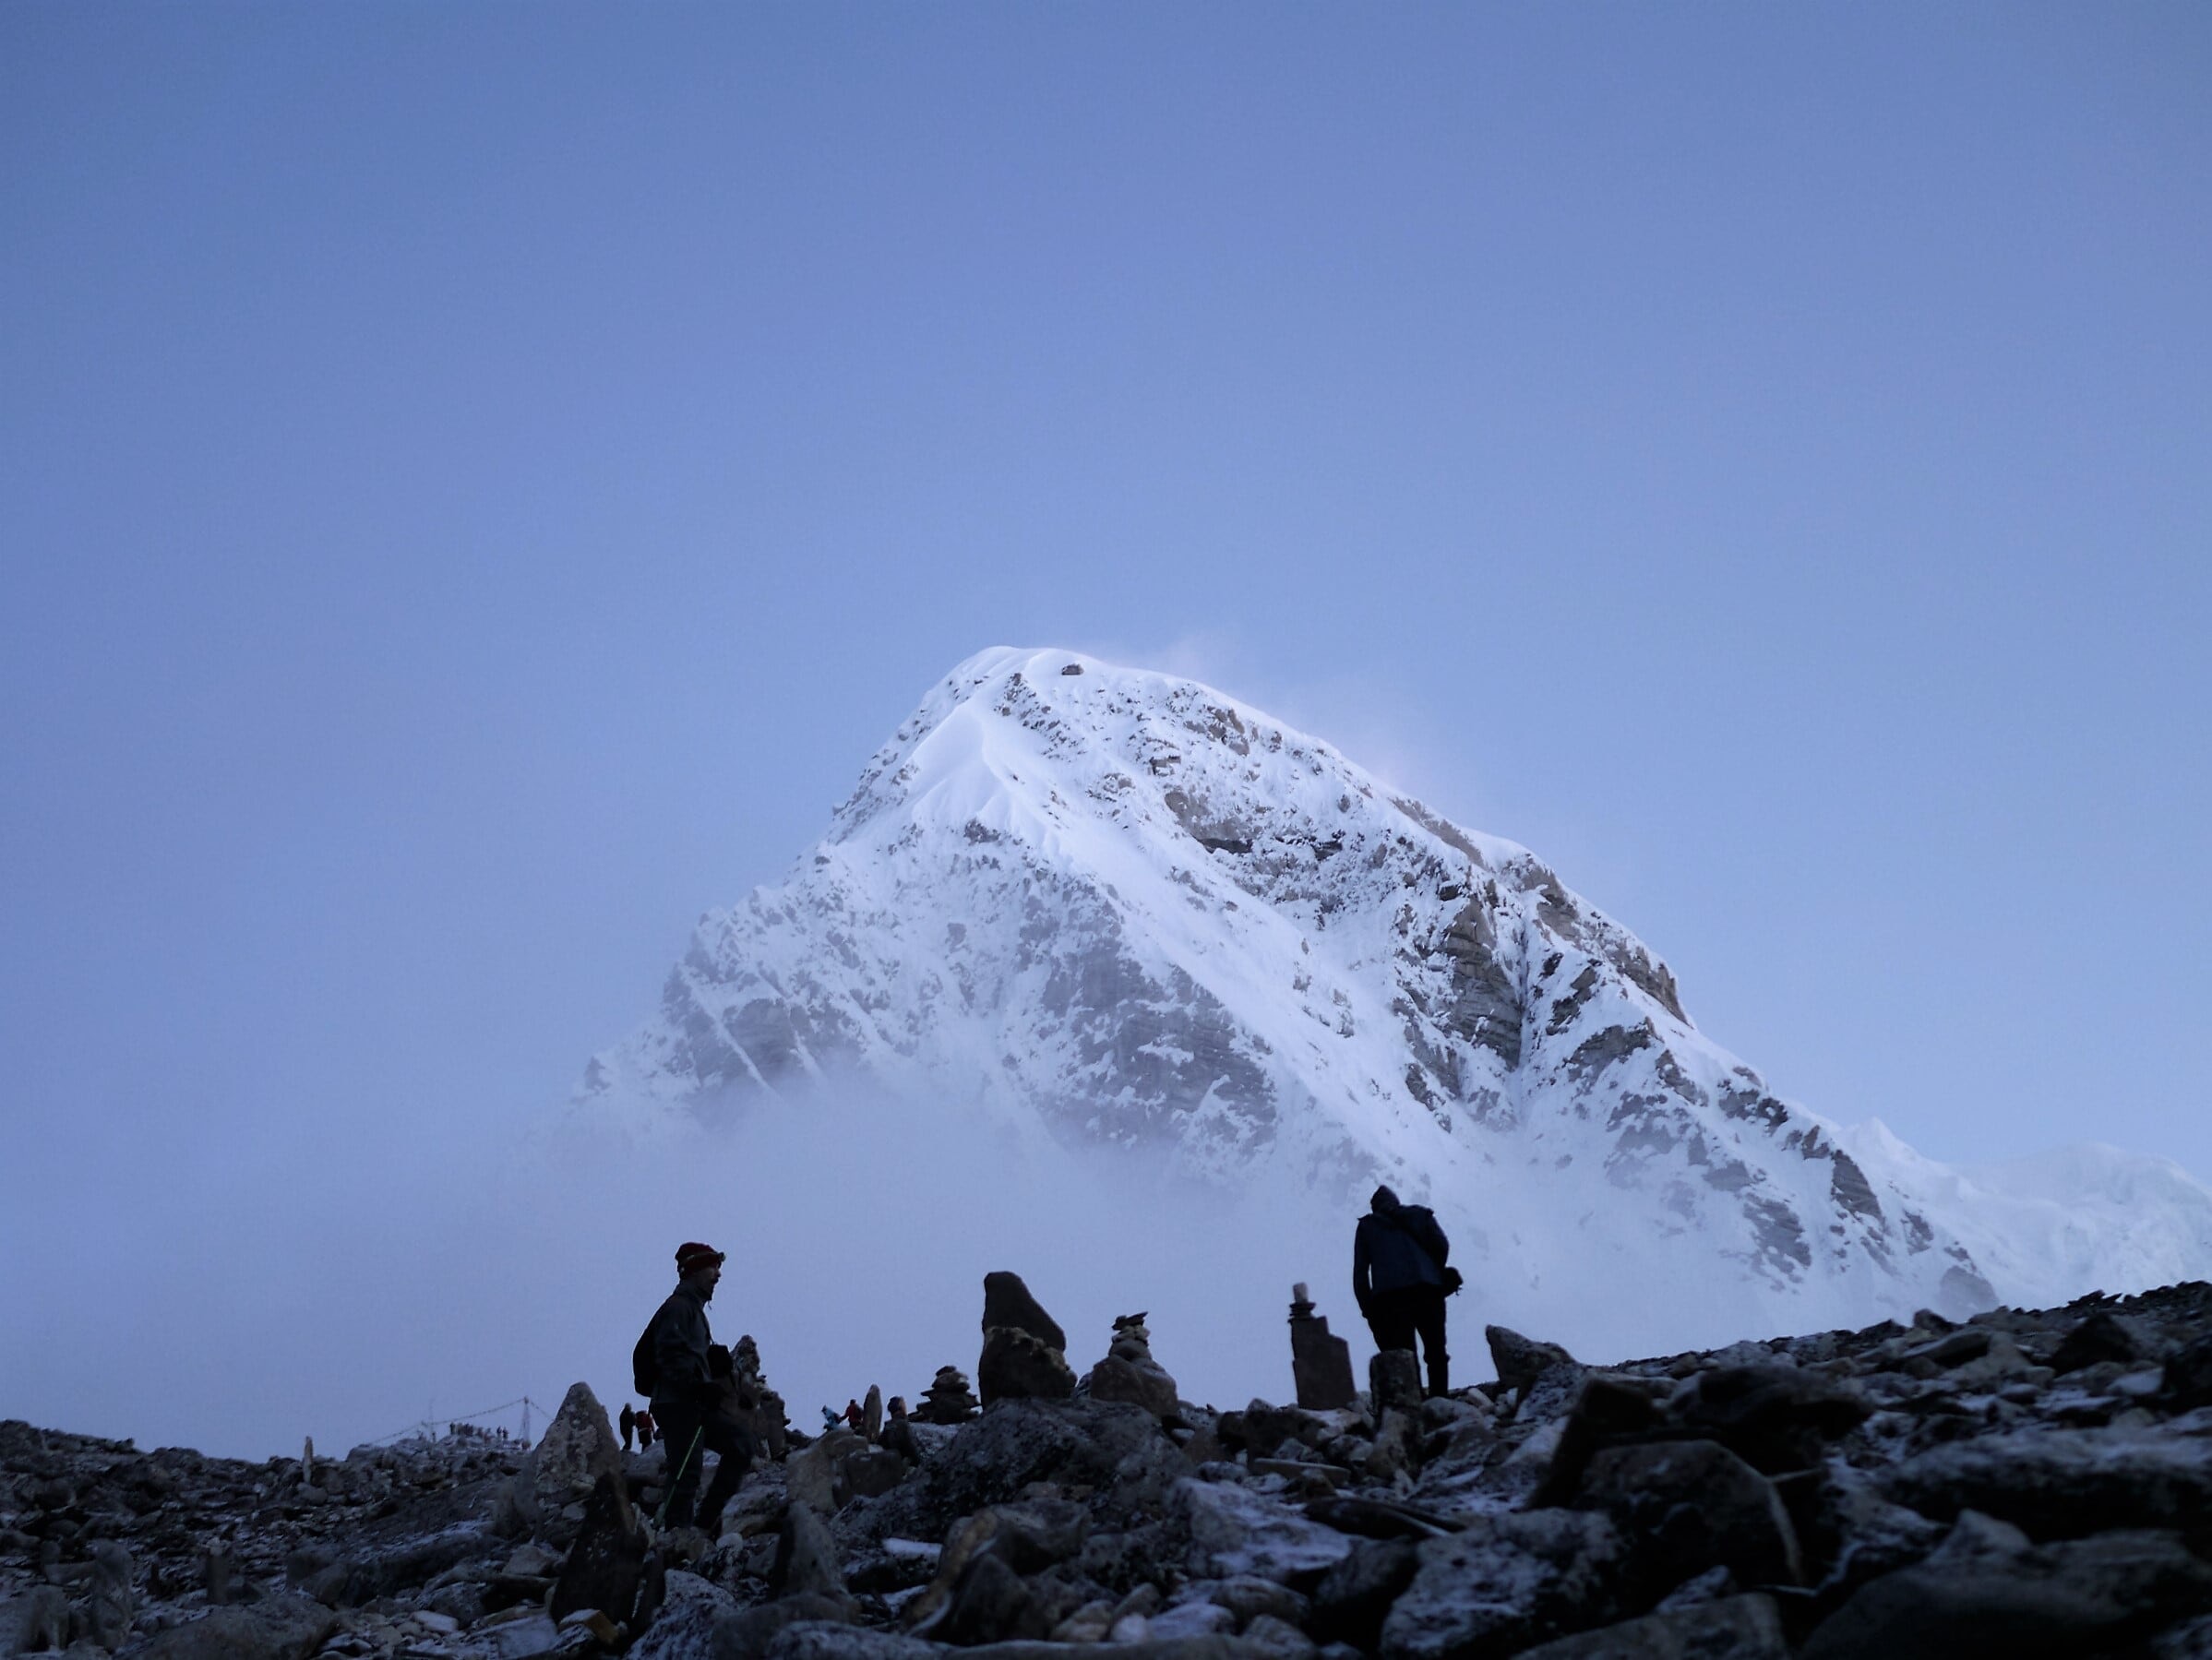 Warum siedet Wasser am Mount Everest schneller als bei uns?